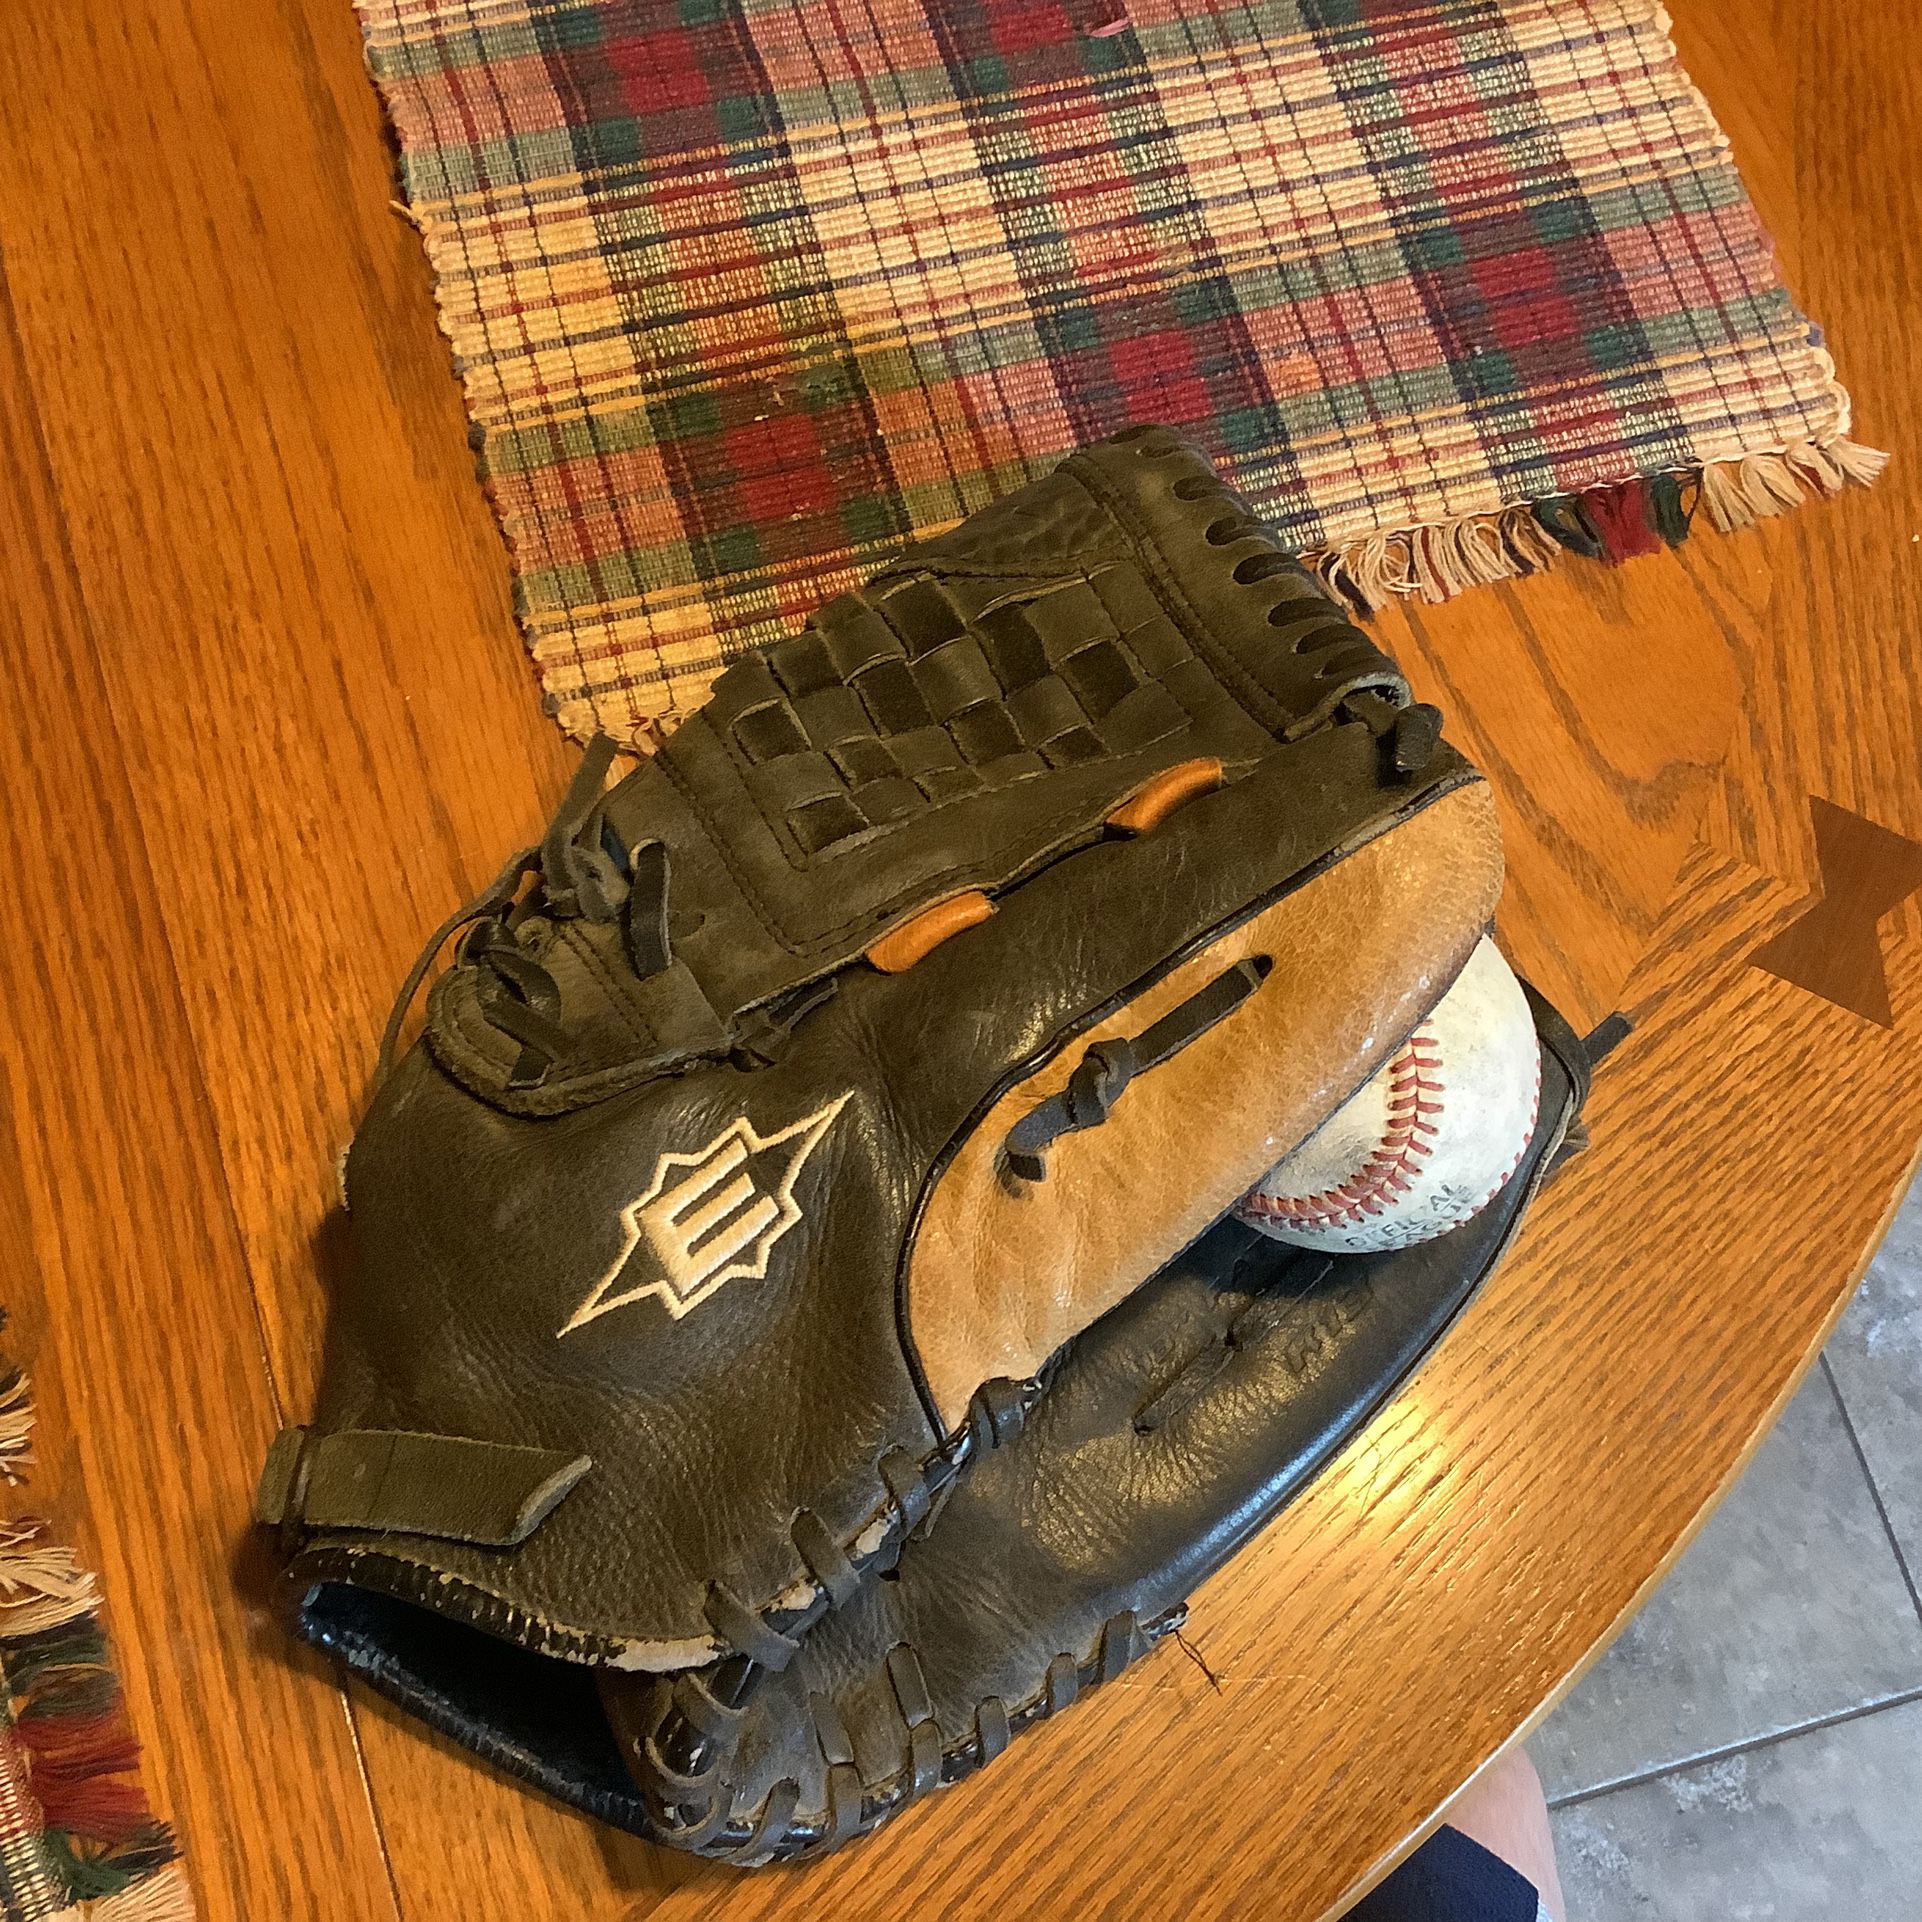 Easton Redline Baseball Glove R13 13” Black Professional Grade RHT and 2 baseballs or softballs